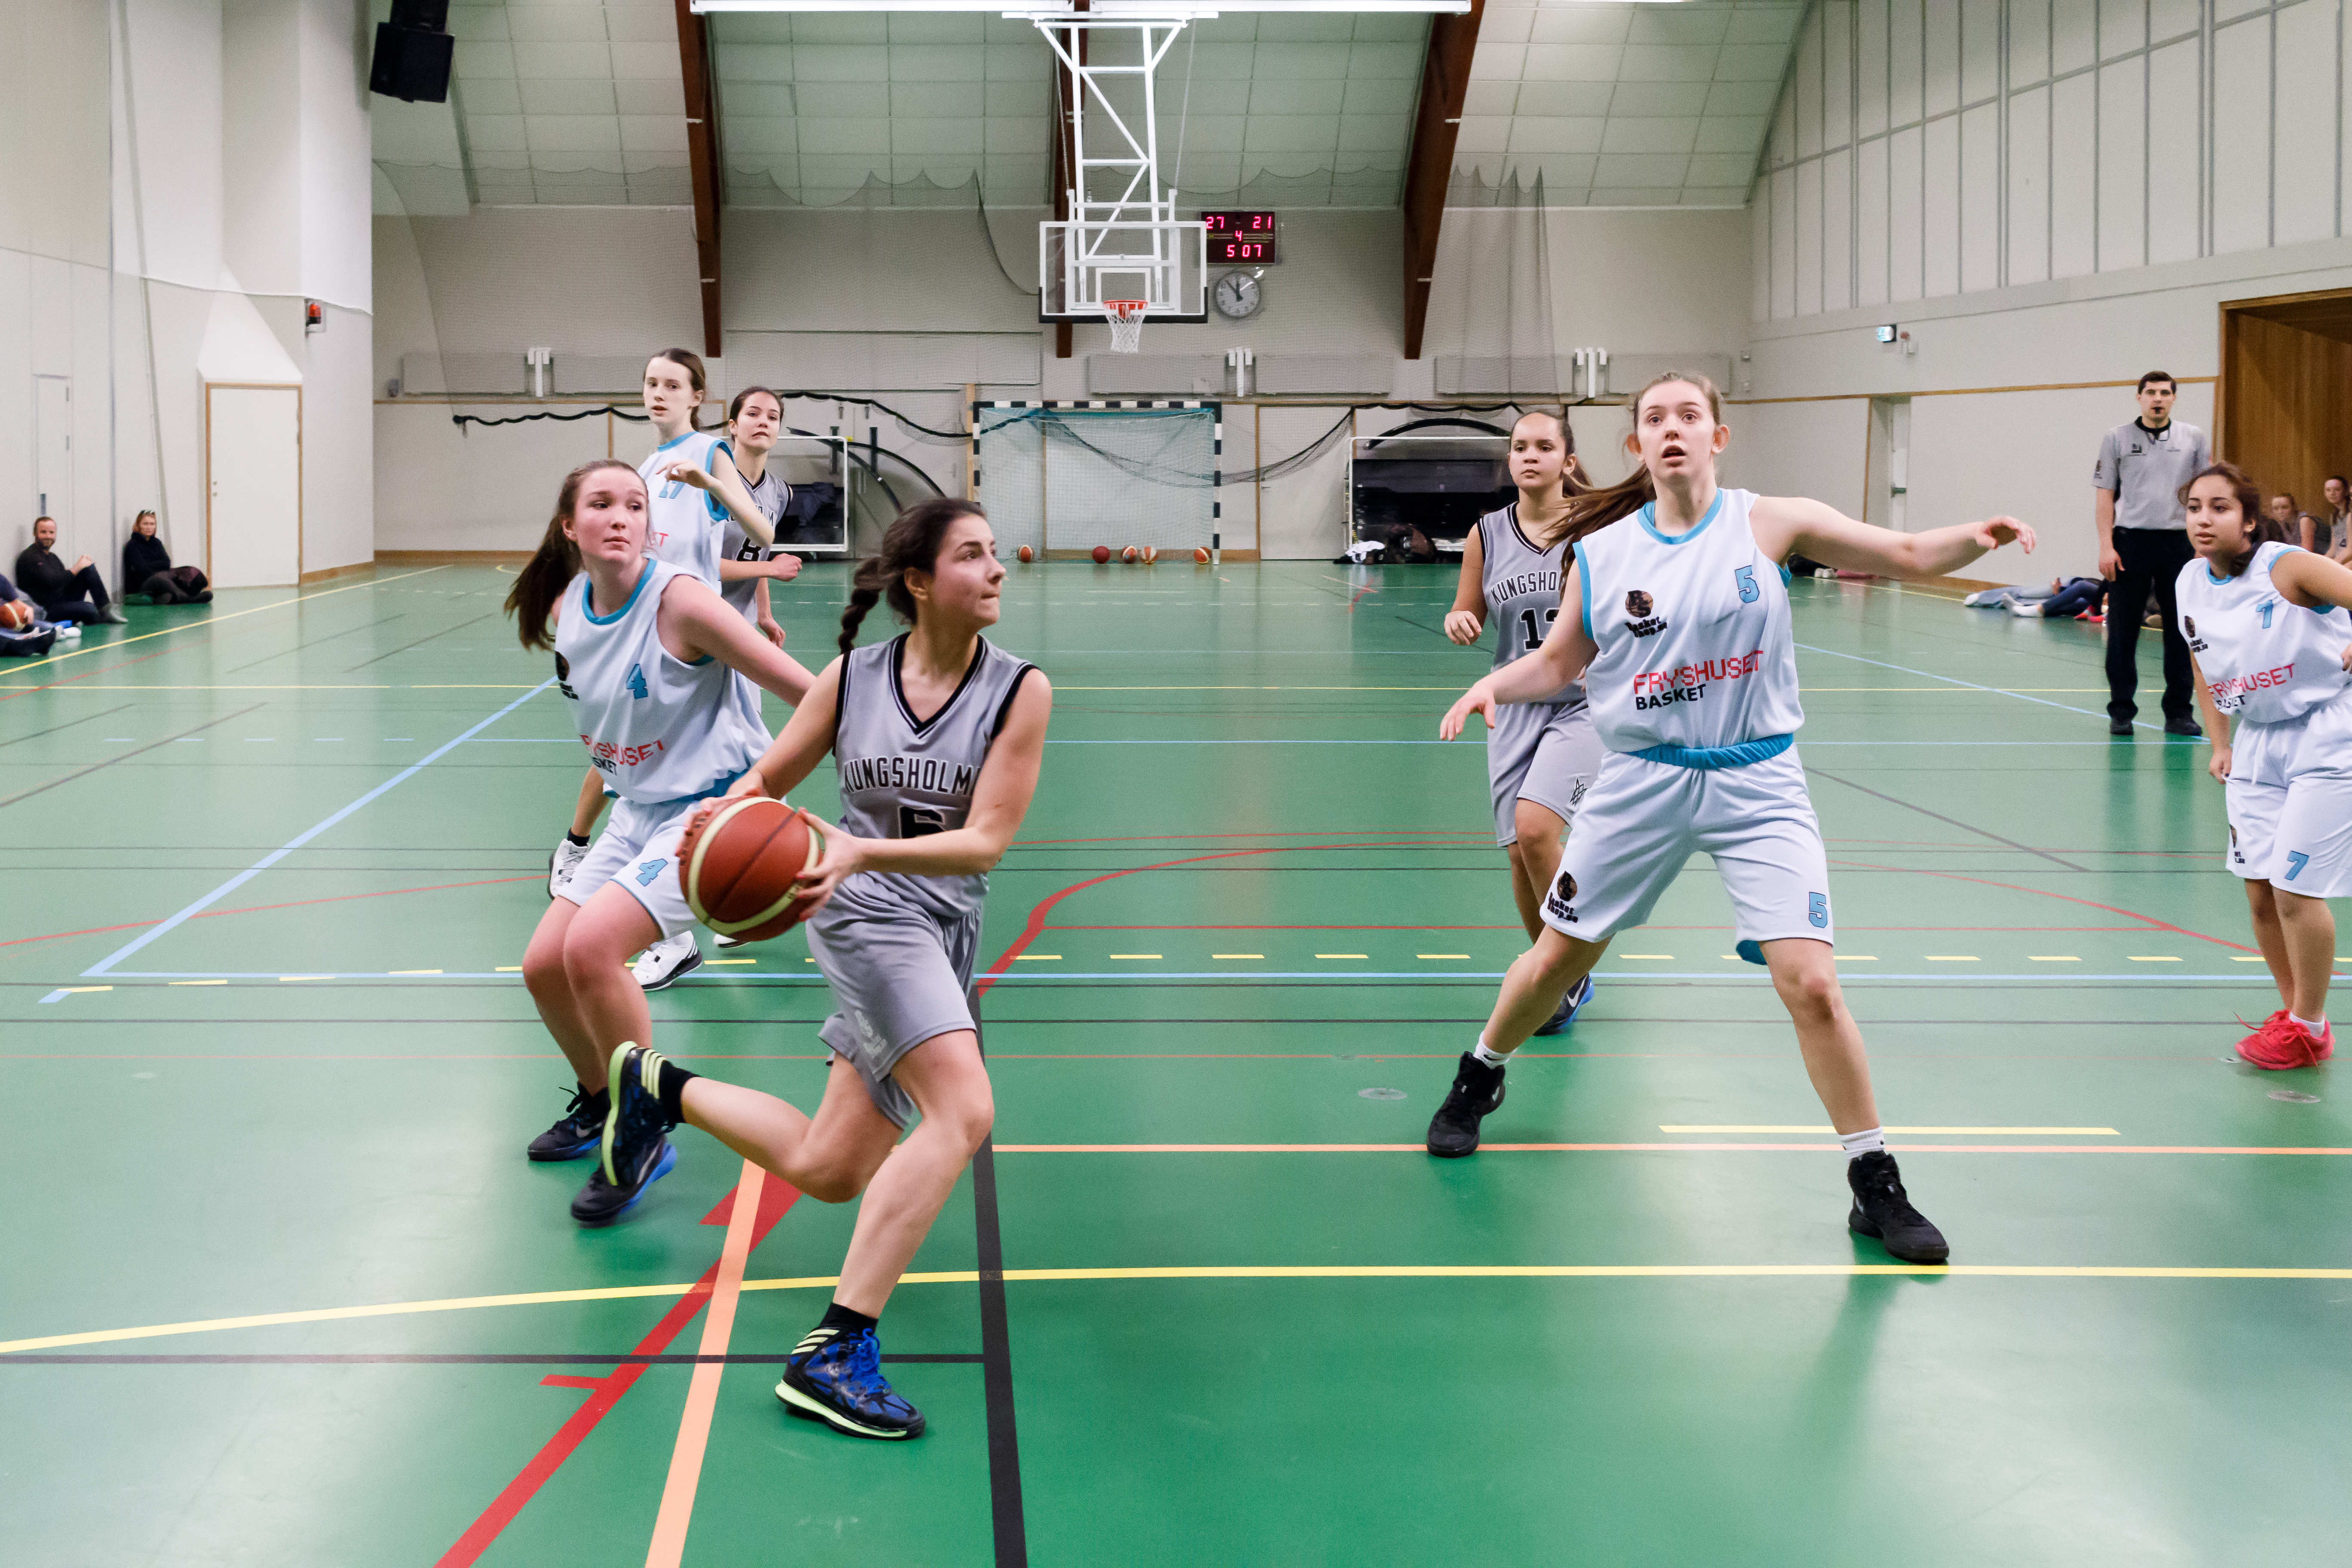 Fryshuset - Kungsholmen basket F01